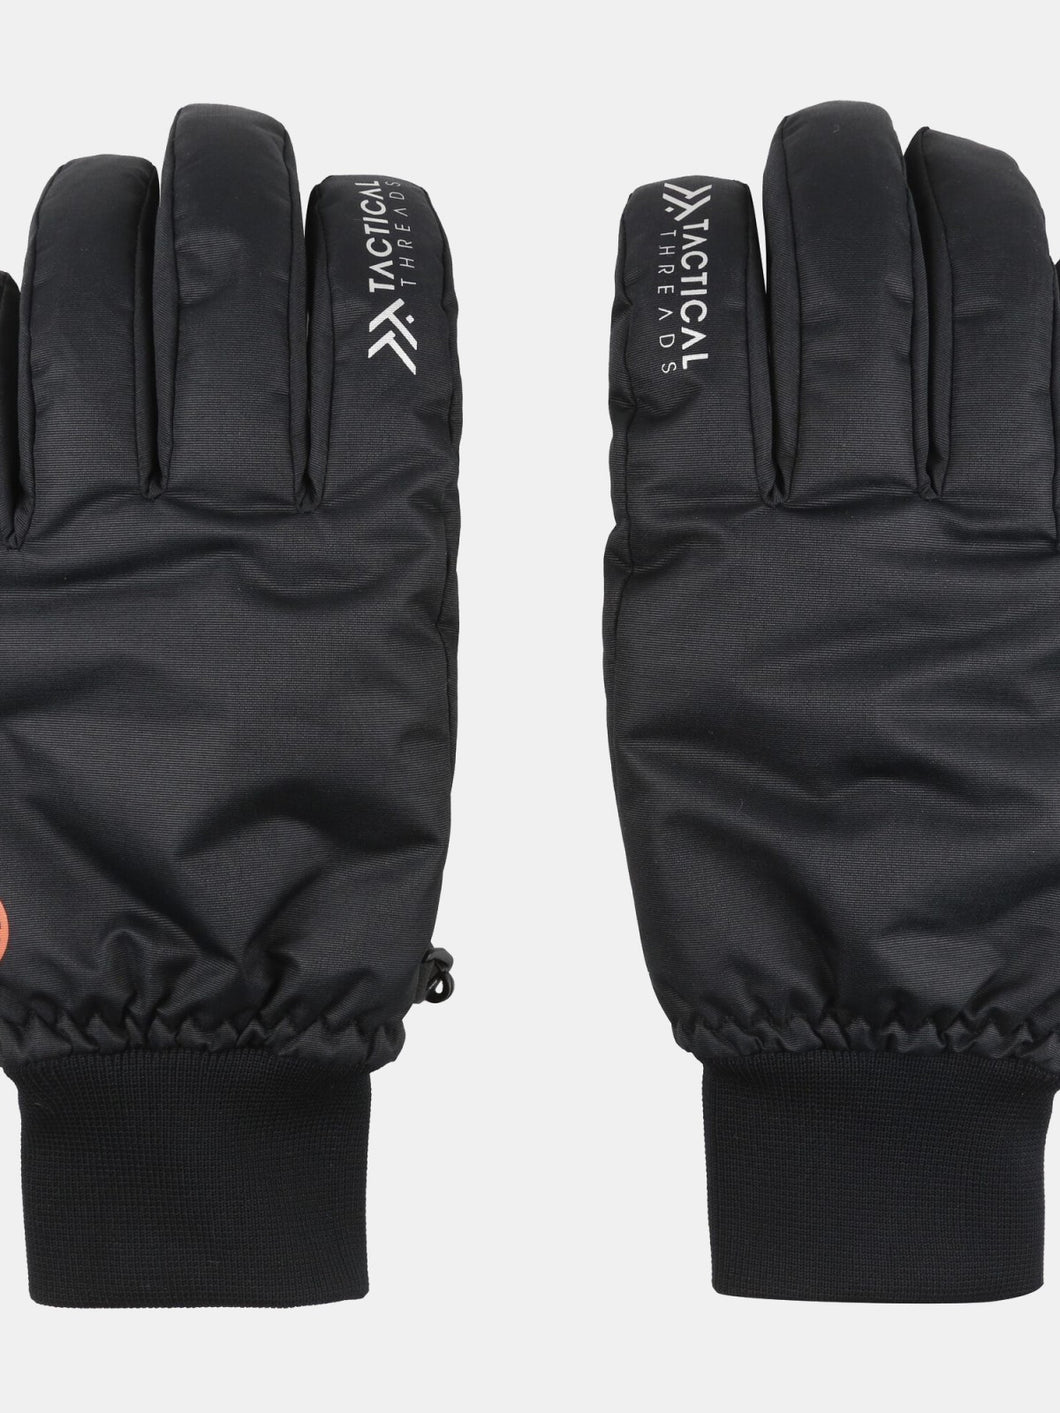 Mens Waterproof Winter Gloves